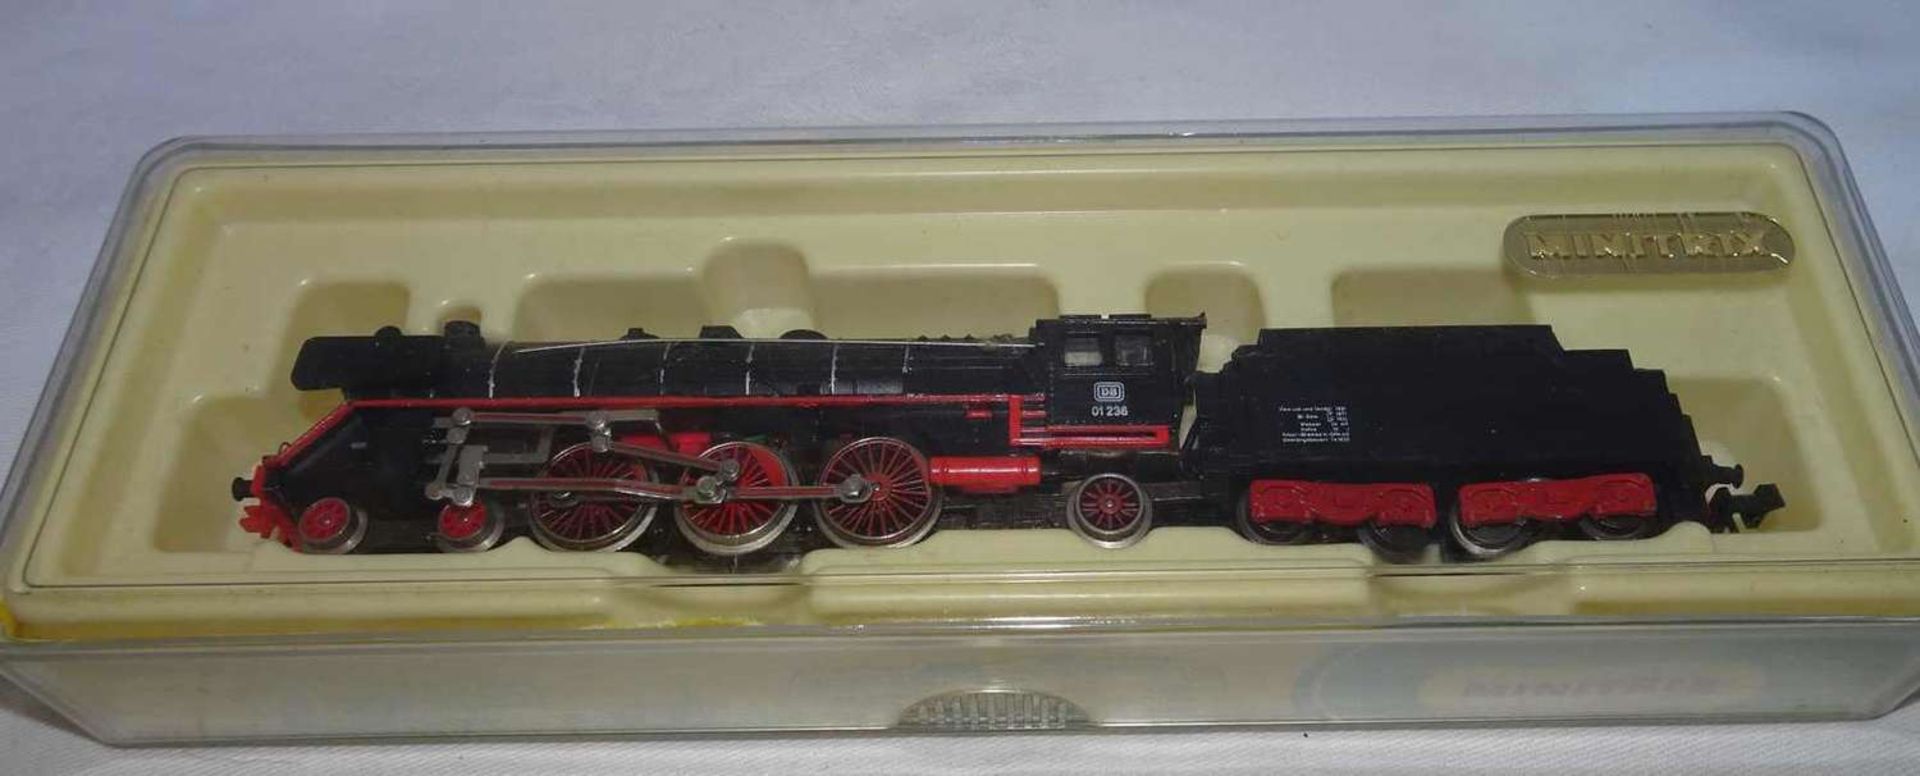 Minitrix steam locomotive, gauge N, No. 51-2900-00. Originally packed. Good condition.Minitrix